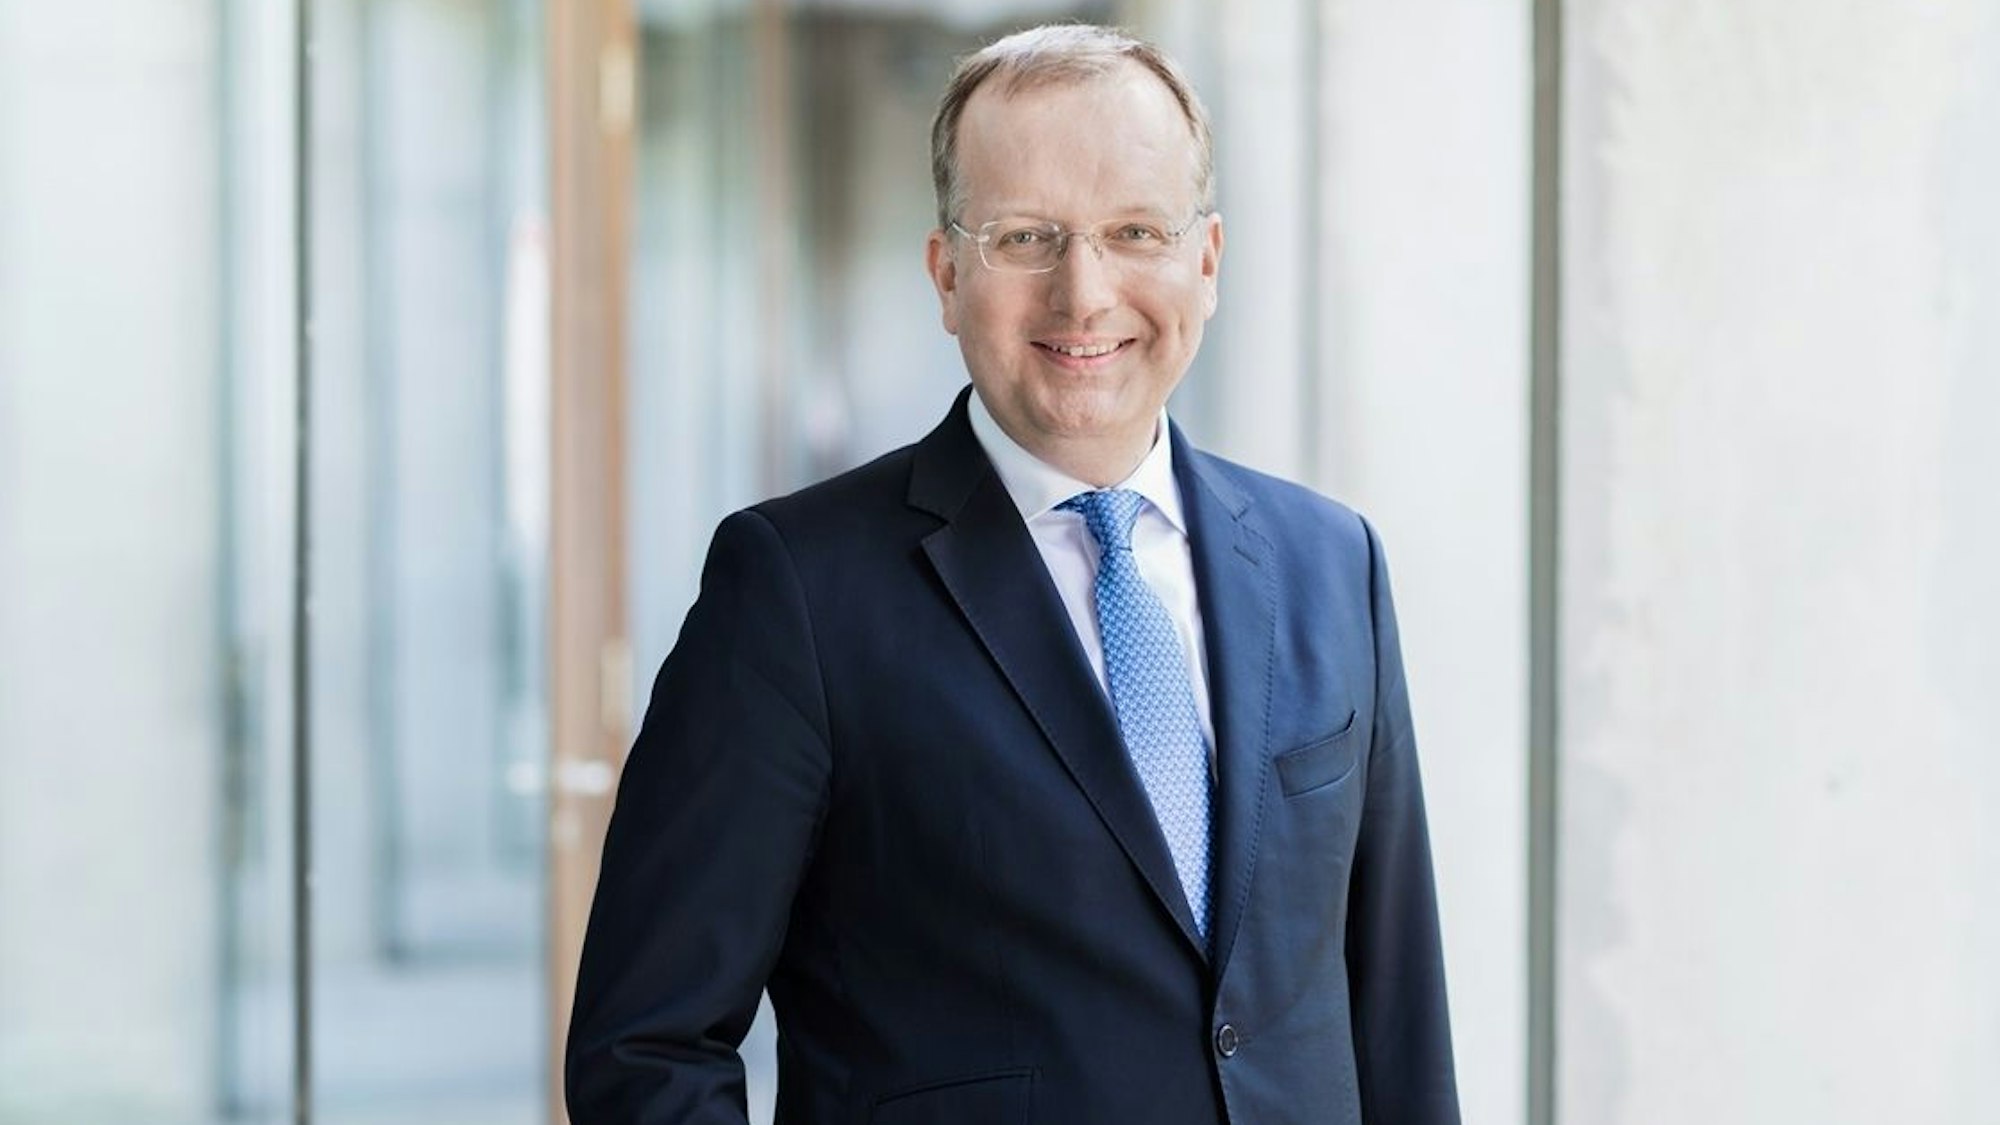 Markus Ogorek, Direktor des Instituts für Öffentliches Recht und Verwaltungslehre an der Universität zu Köln, im blauen Anzug.